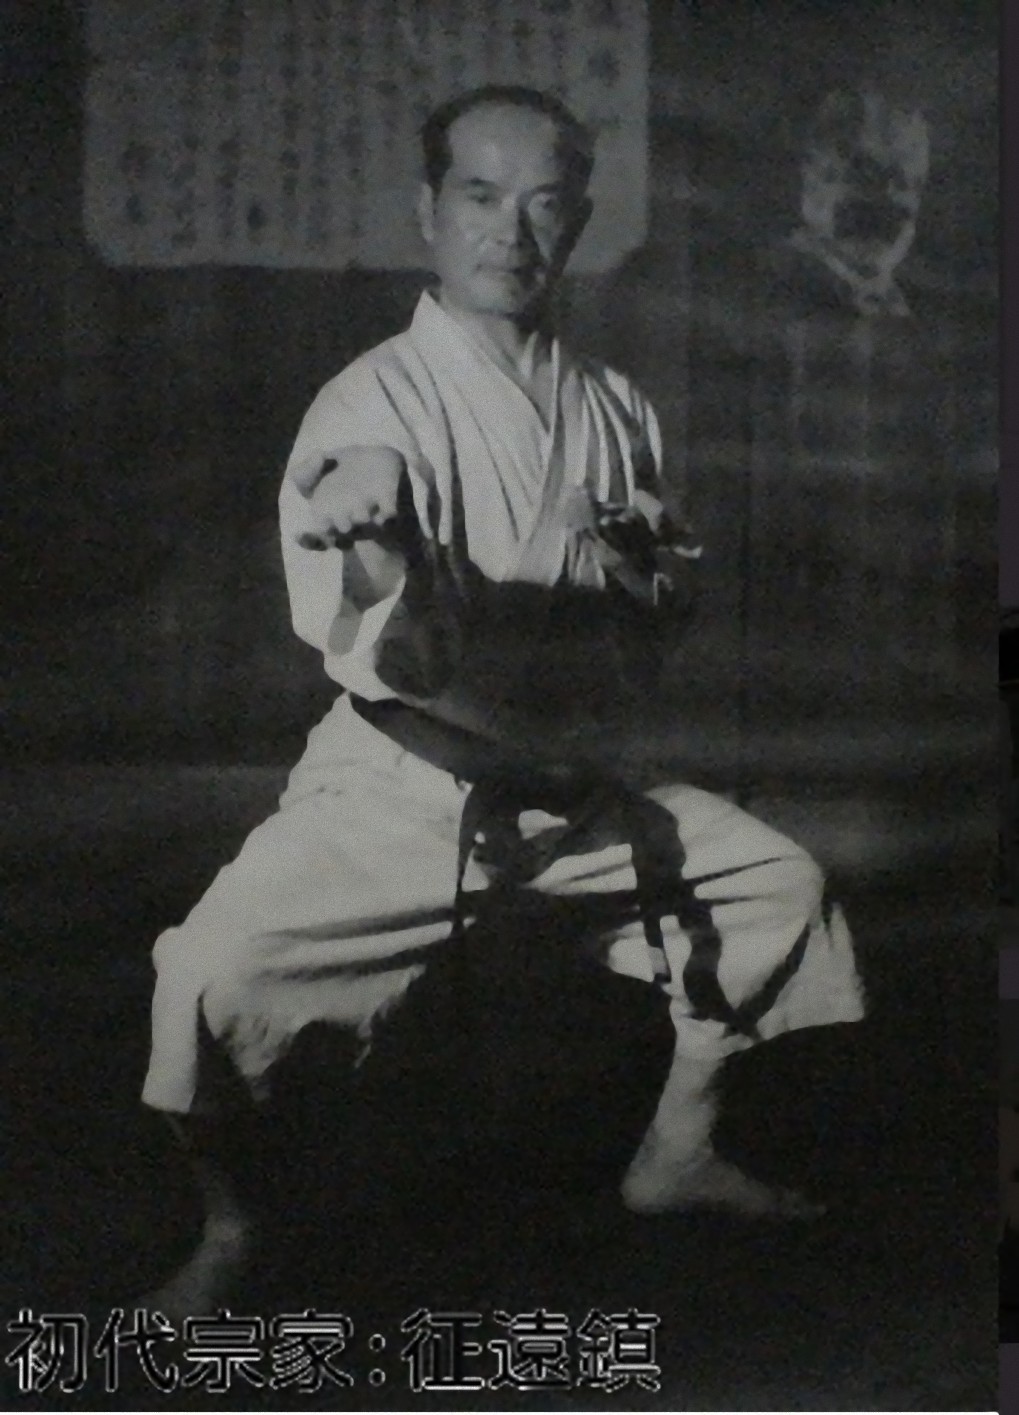 Seiko Higa – INTERNATIONAL KARATEDO GOJURYU SENBUKAI